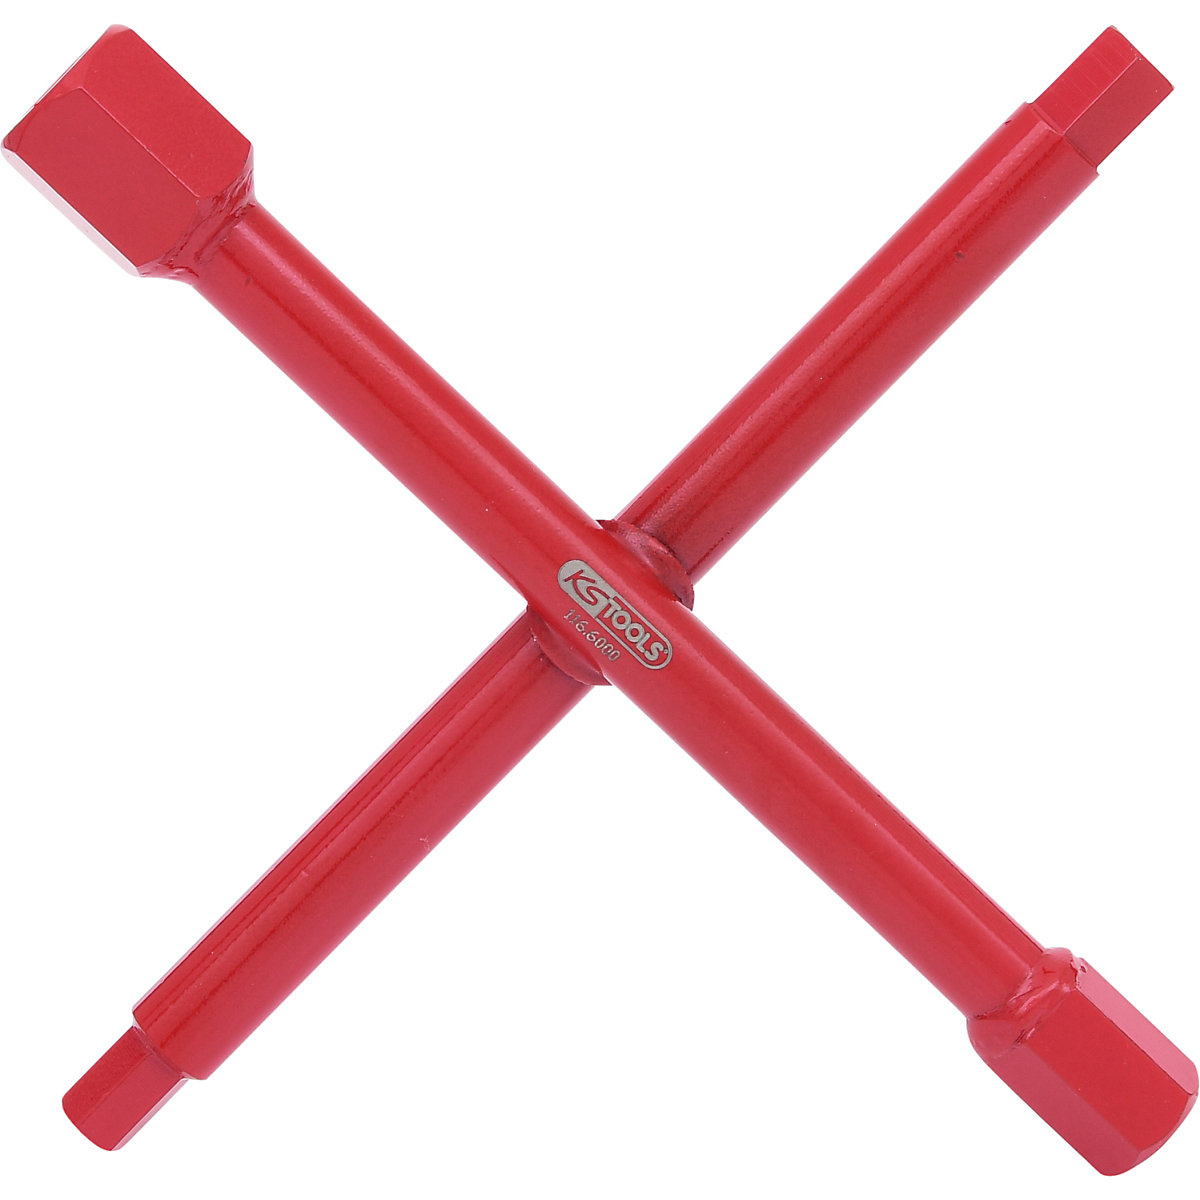 Plumber's cross wrench – KS Tools